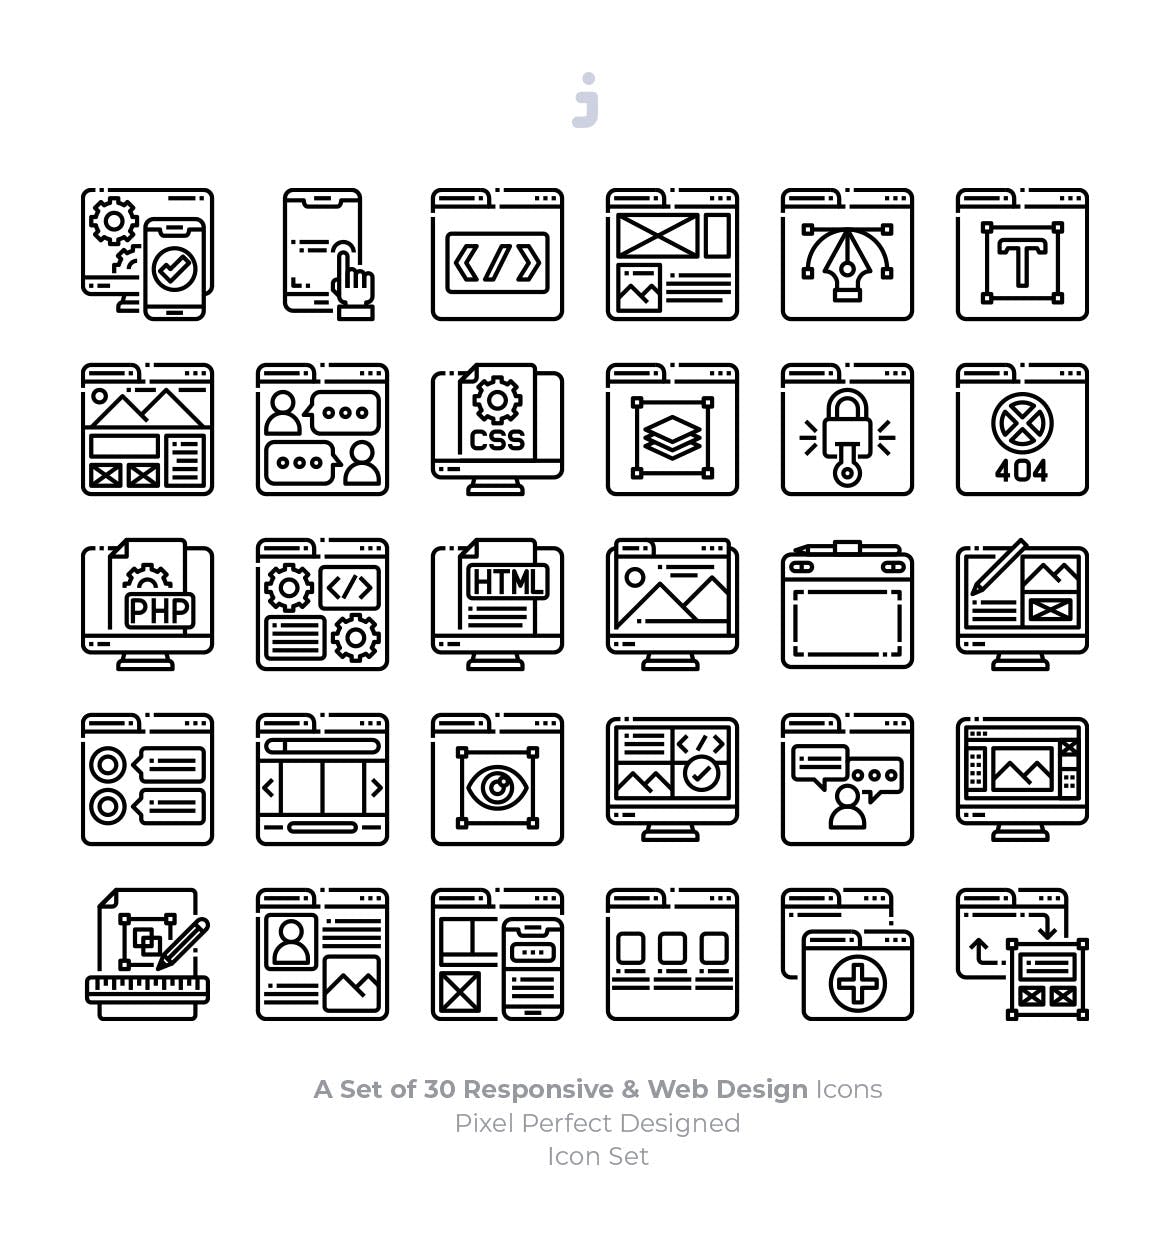 30枚彩色响应式网站设计矢量蚂蚁素材精选图标 30 Responsive & Web Design Icons插图(2)